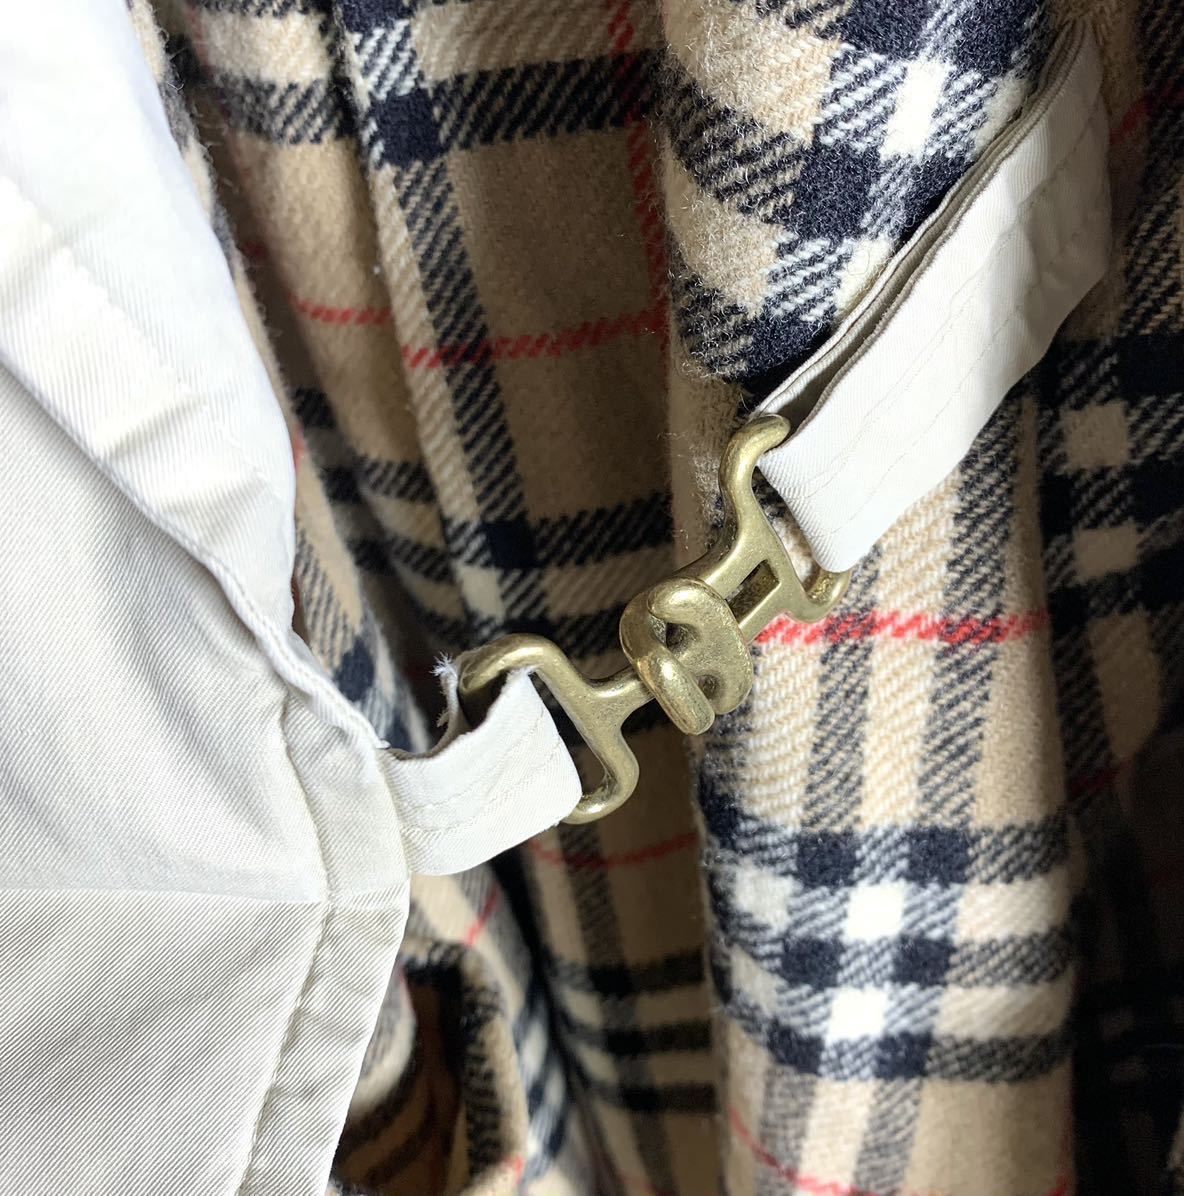 Special Tielocken coat 1枚袖 Burberry 一枚袖 バーバリー 英国製